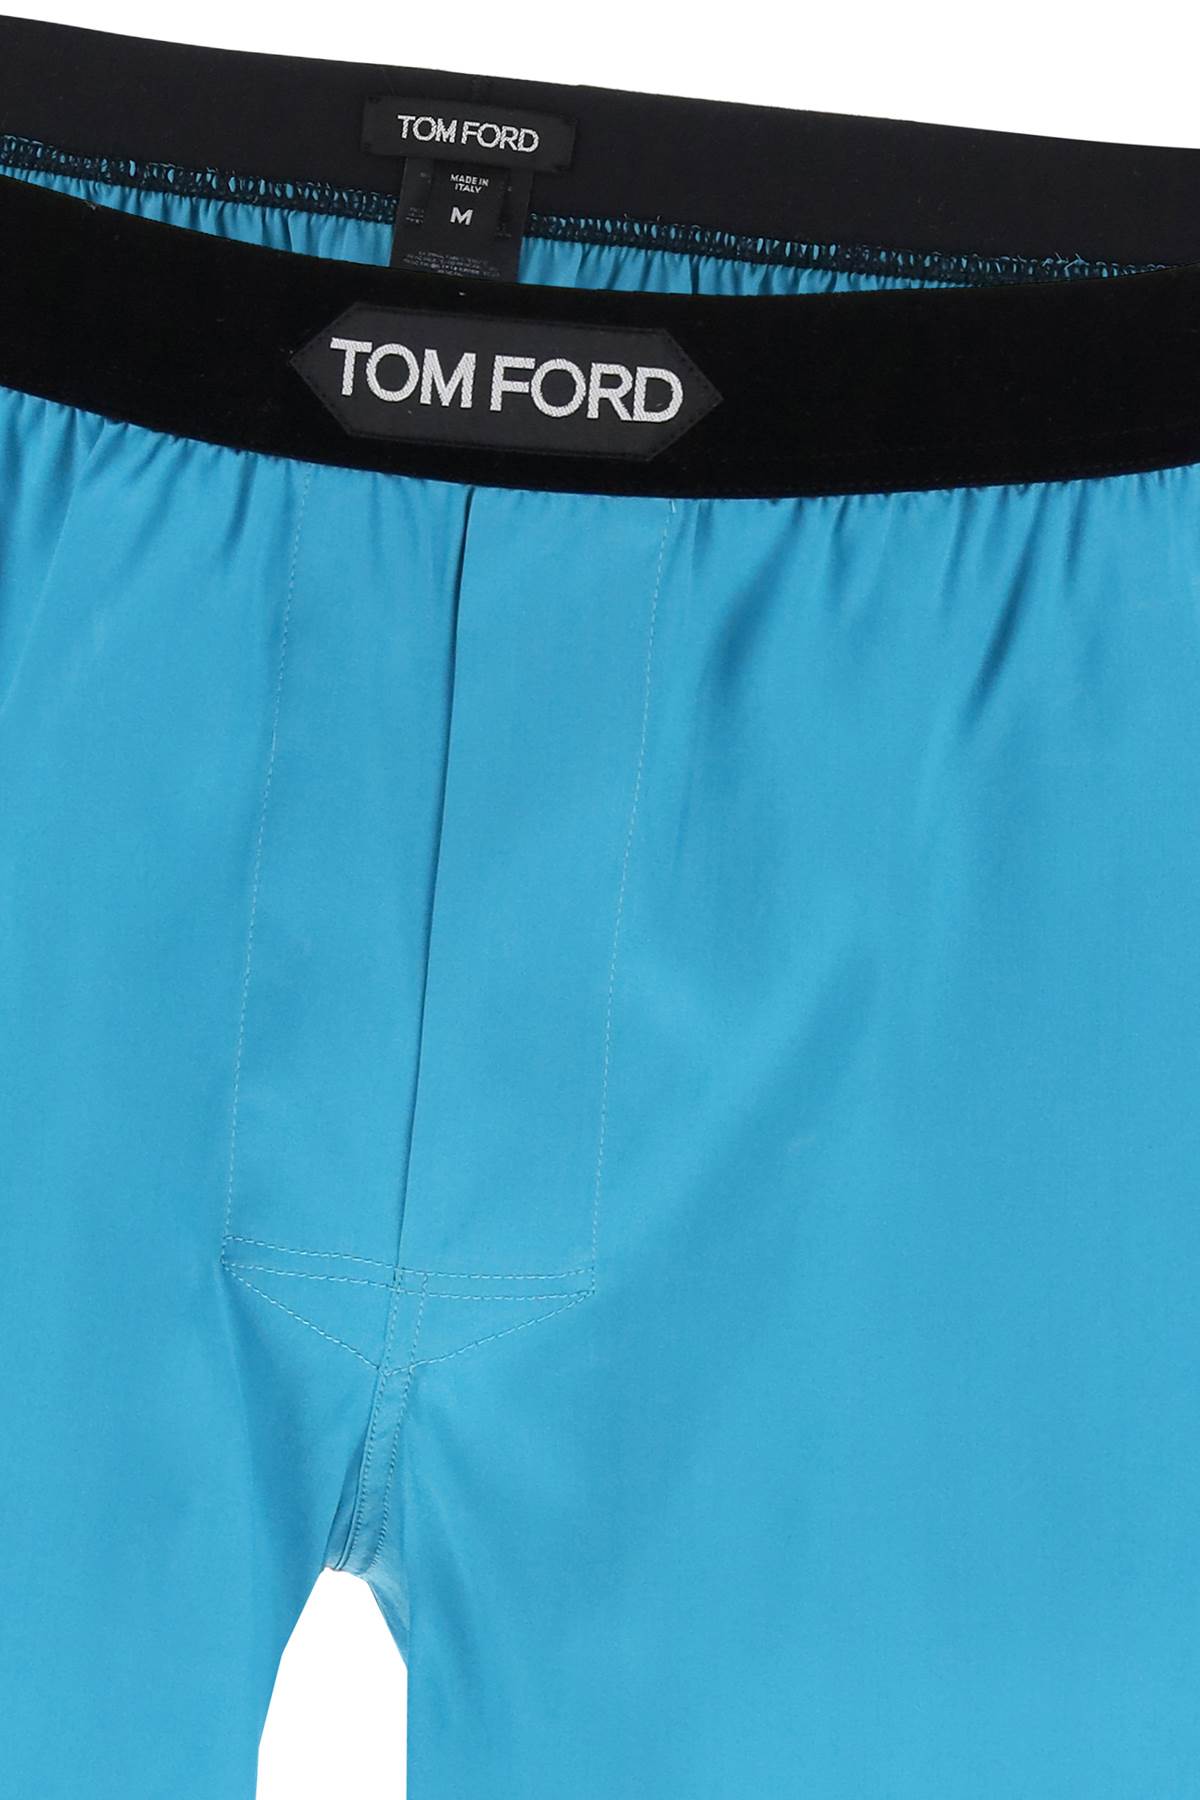 Shop Tom Ford Silk Boxer Set In Light Blue